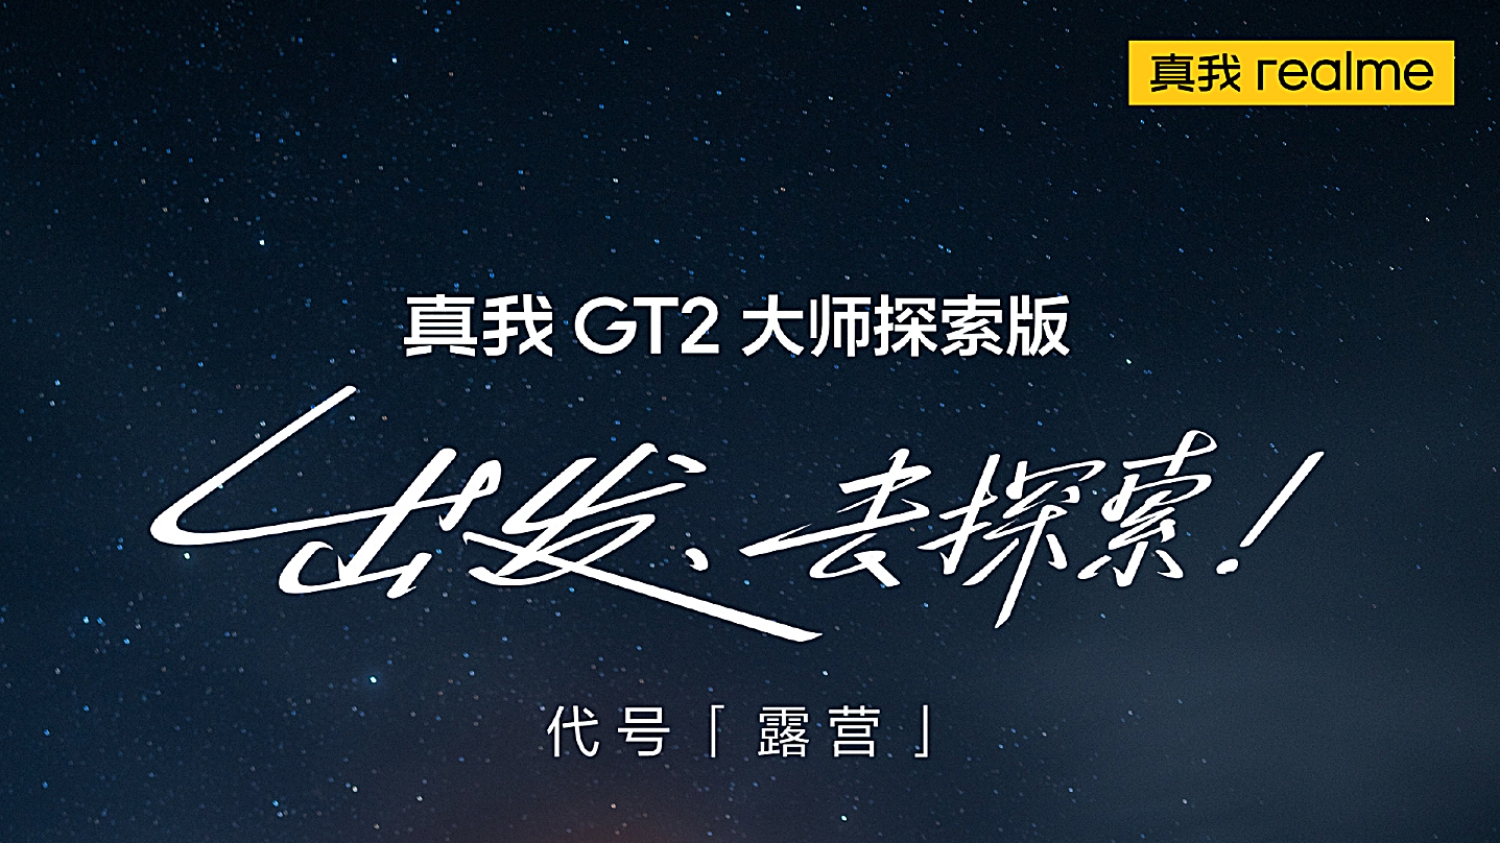 Realme Menjadualkan Pelancaran GT2 Master Explorer Edition Pada 12 Julai